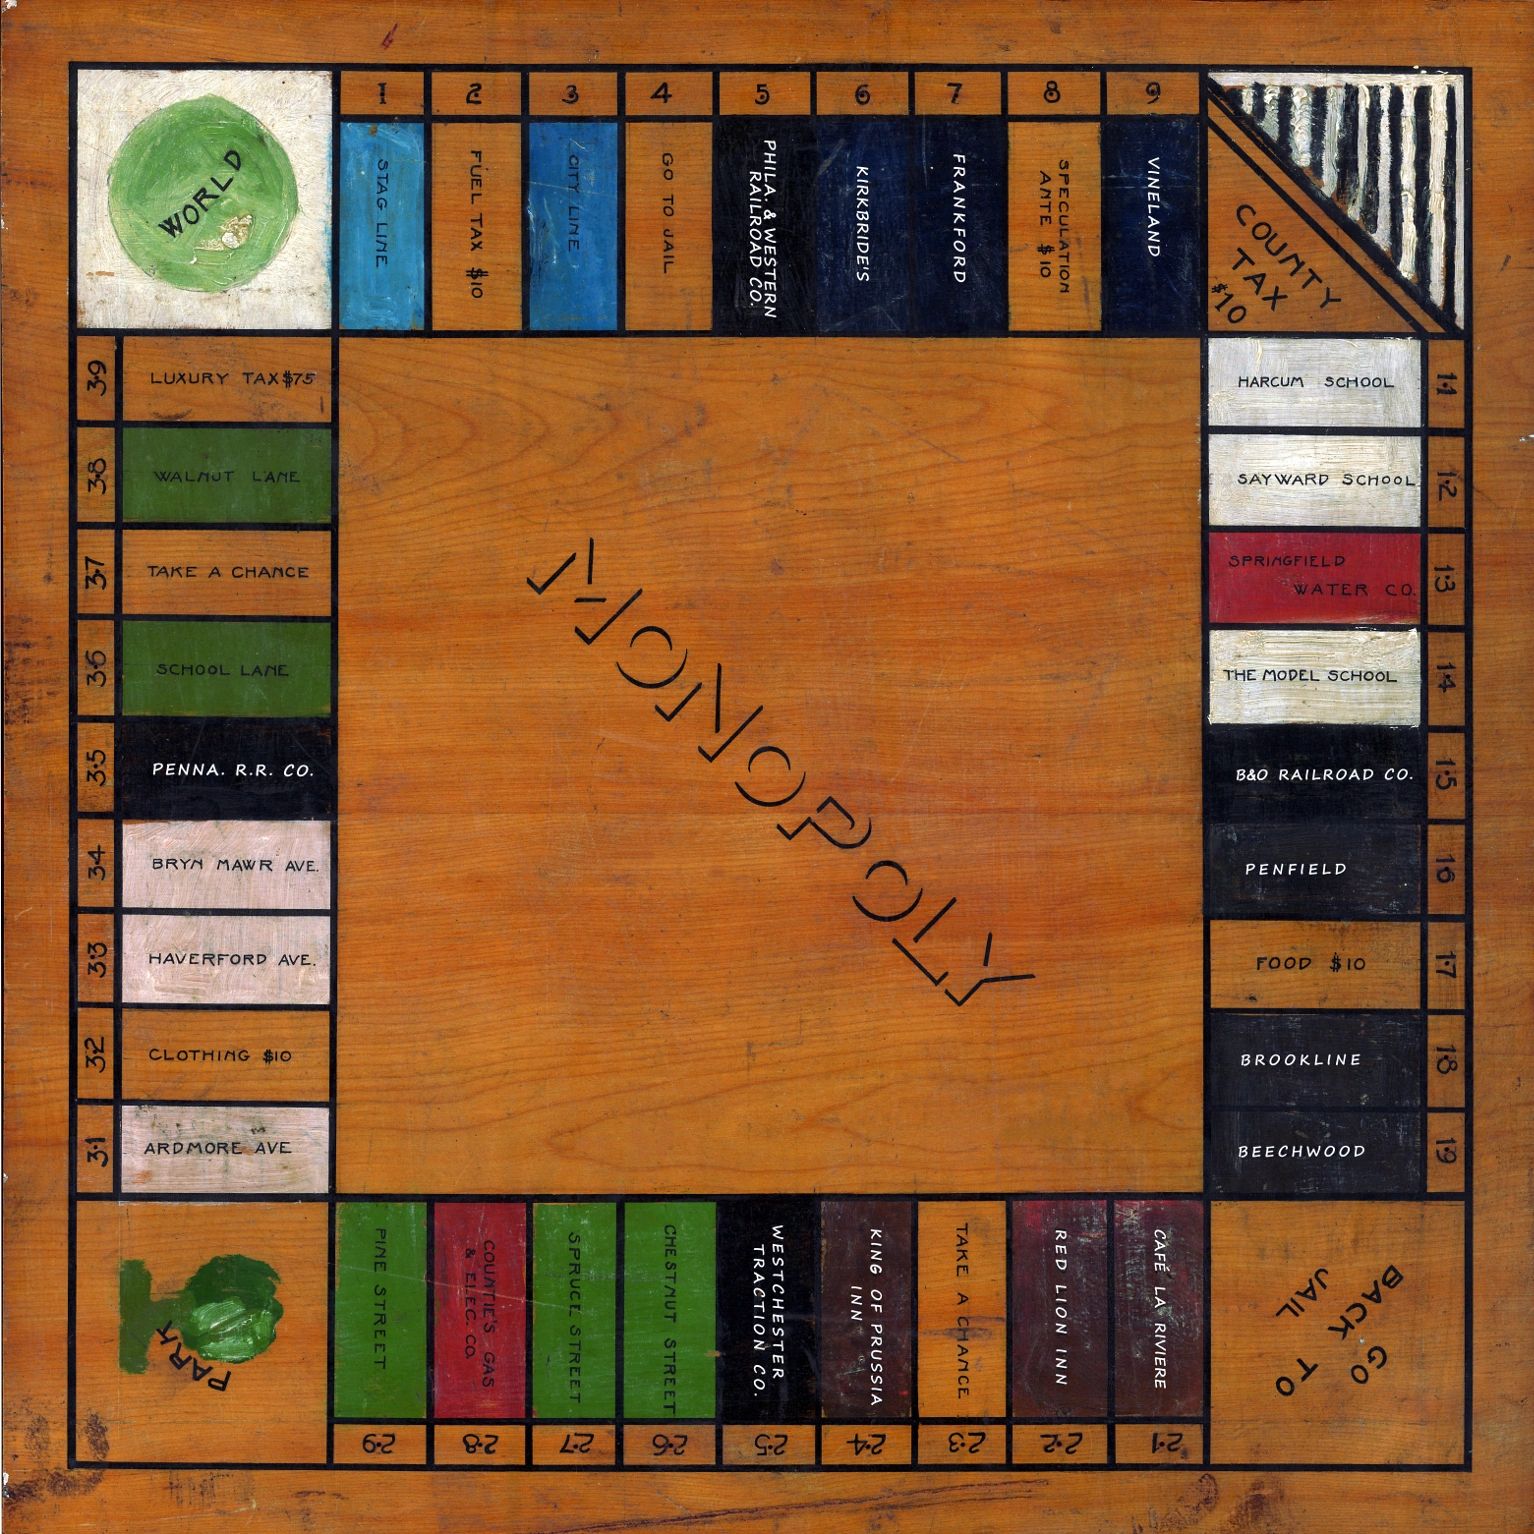 Monopoly Game - The 1920 Philadelphia Folk Monopoly Game